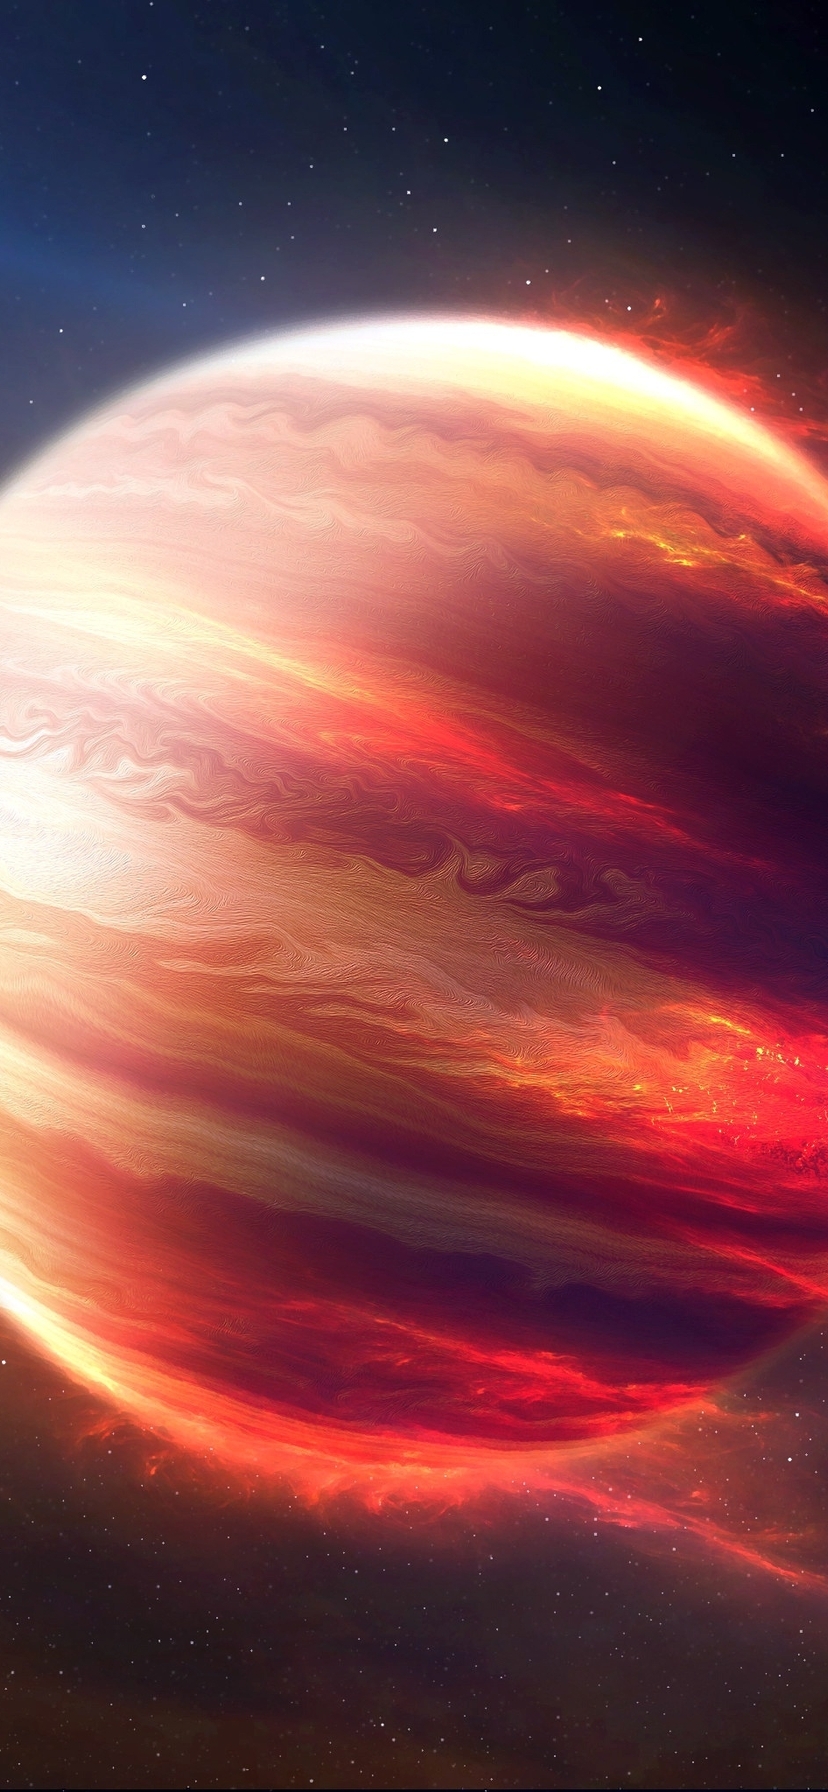 Картинка: Планета, космос, горячий юпитер, свет, лучи, звёзды